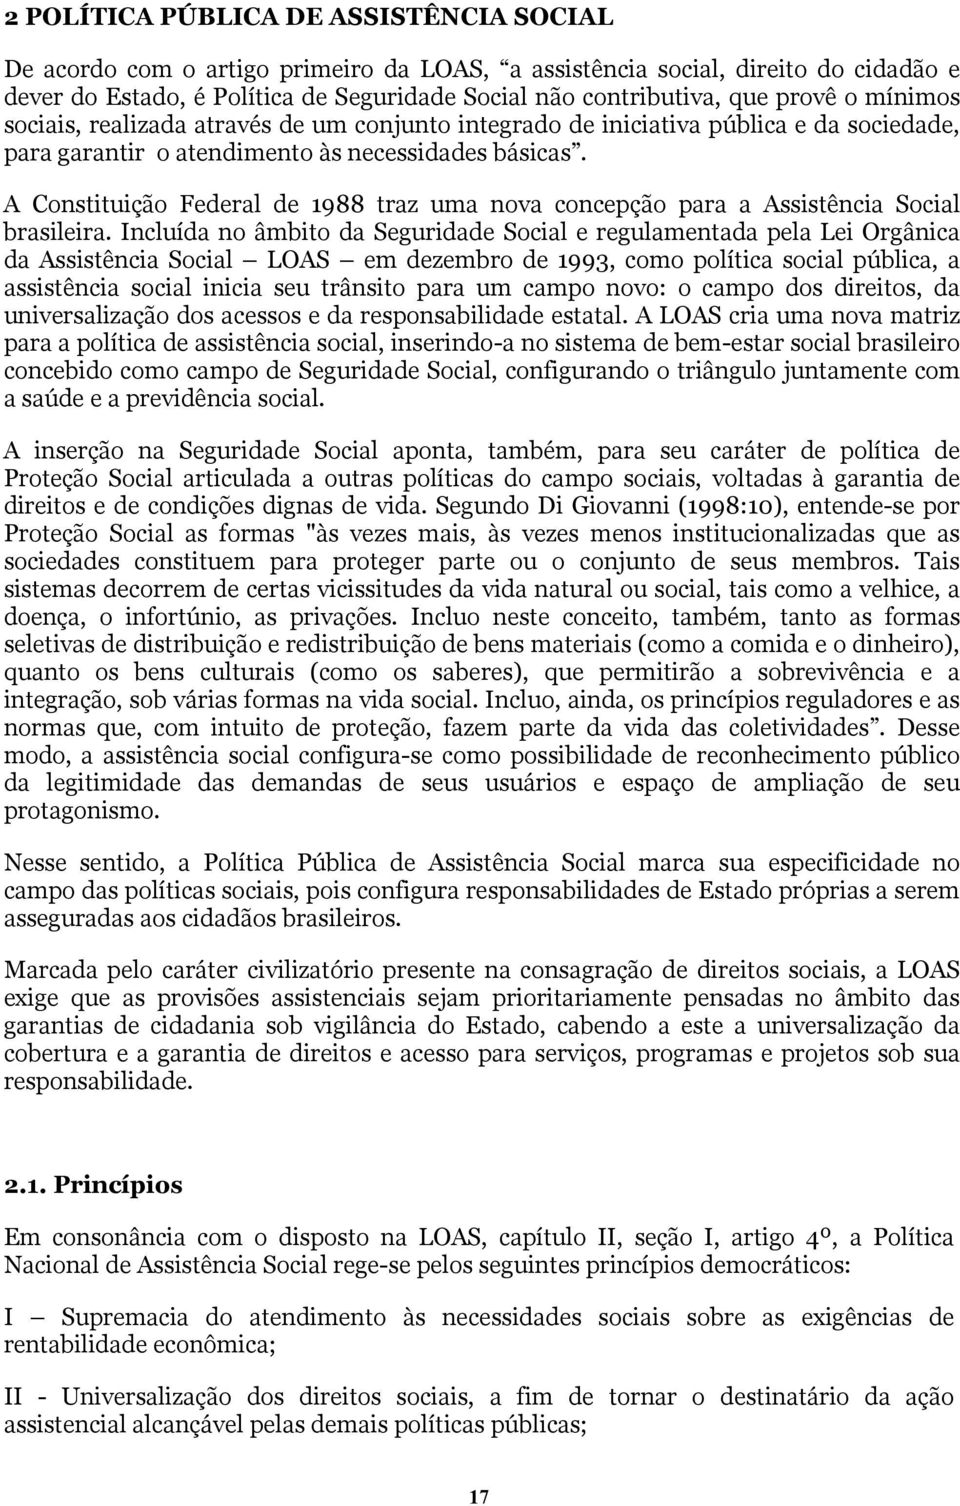 A Constituição Federal de 1988 traz uma nova concepção para a Assistência Social brasileira.